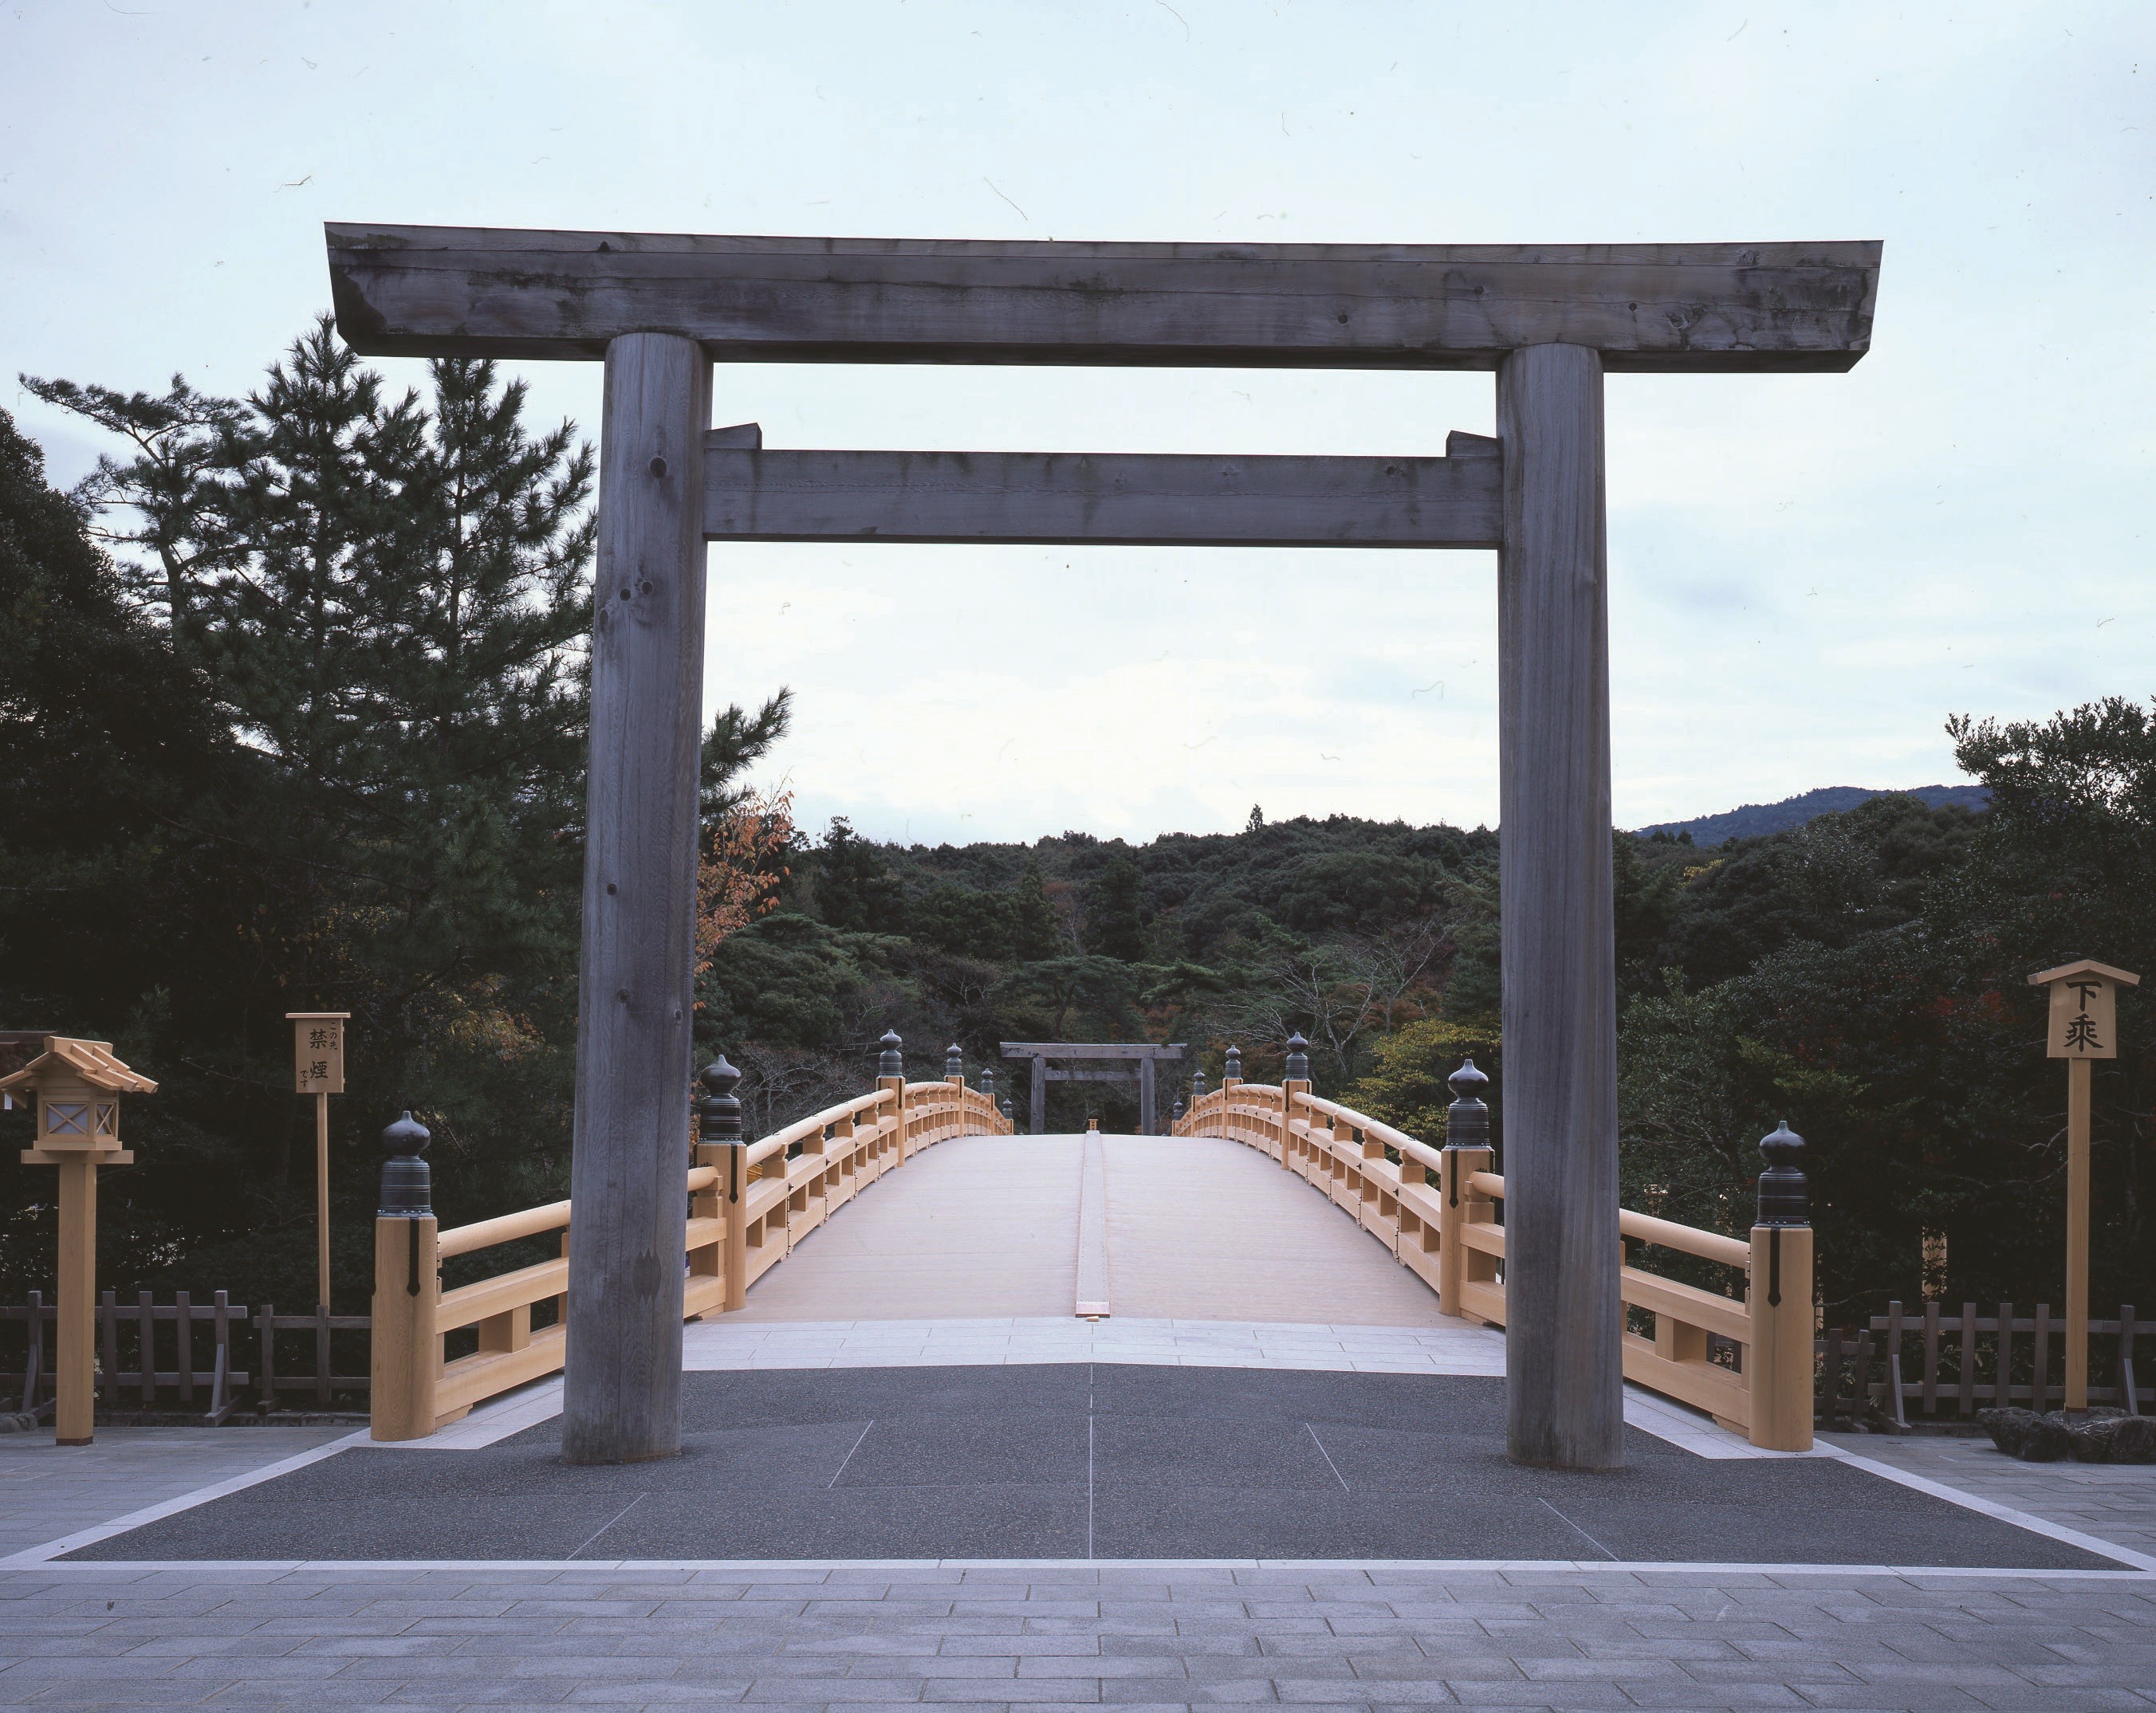 神様に生かされていることを感謝する神社！日本随一のパワースポット「伊勢神宮」